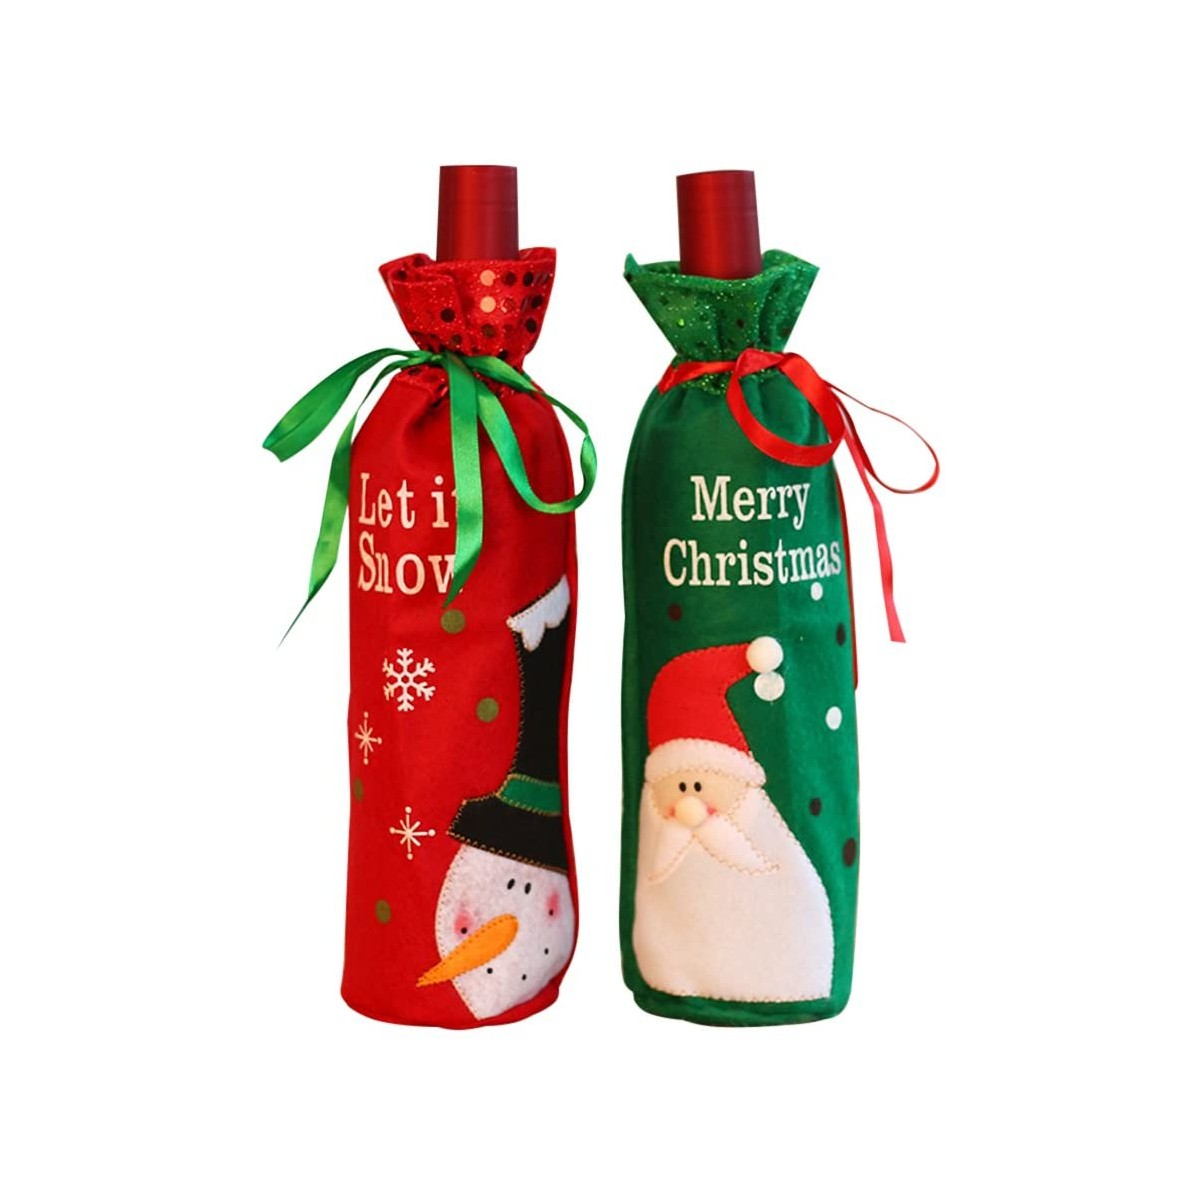 Coperchio della Bottiglia di Vino di Natale LxwSin Copribottiglie di Vino di Natale 3 Pezzi Sacchetti per Bottiglia di Vino di Natale Sacchetti Regalo di Vino Rosso per Decorazione della Tavola 